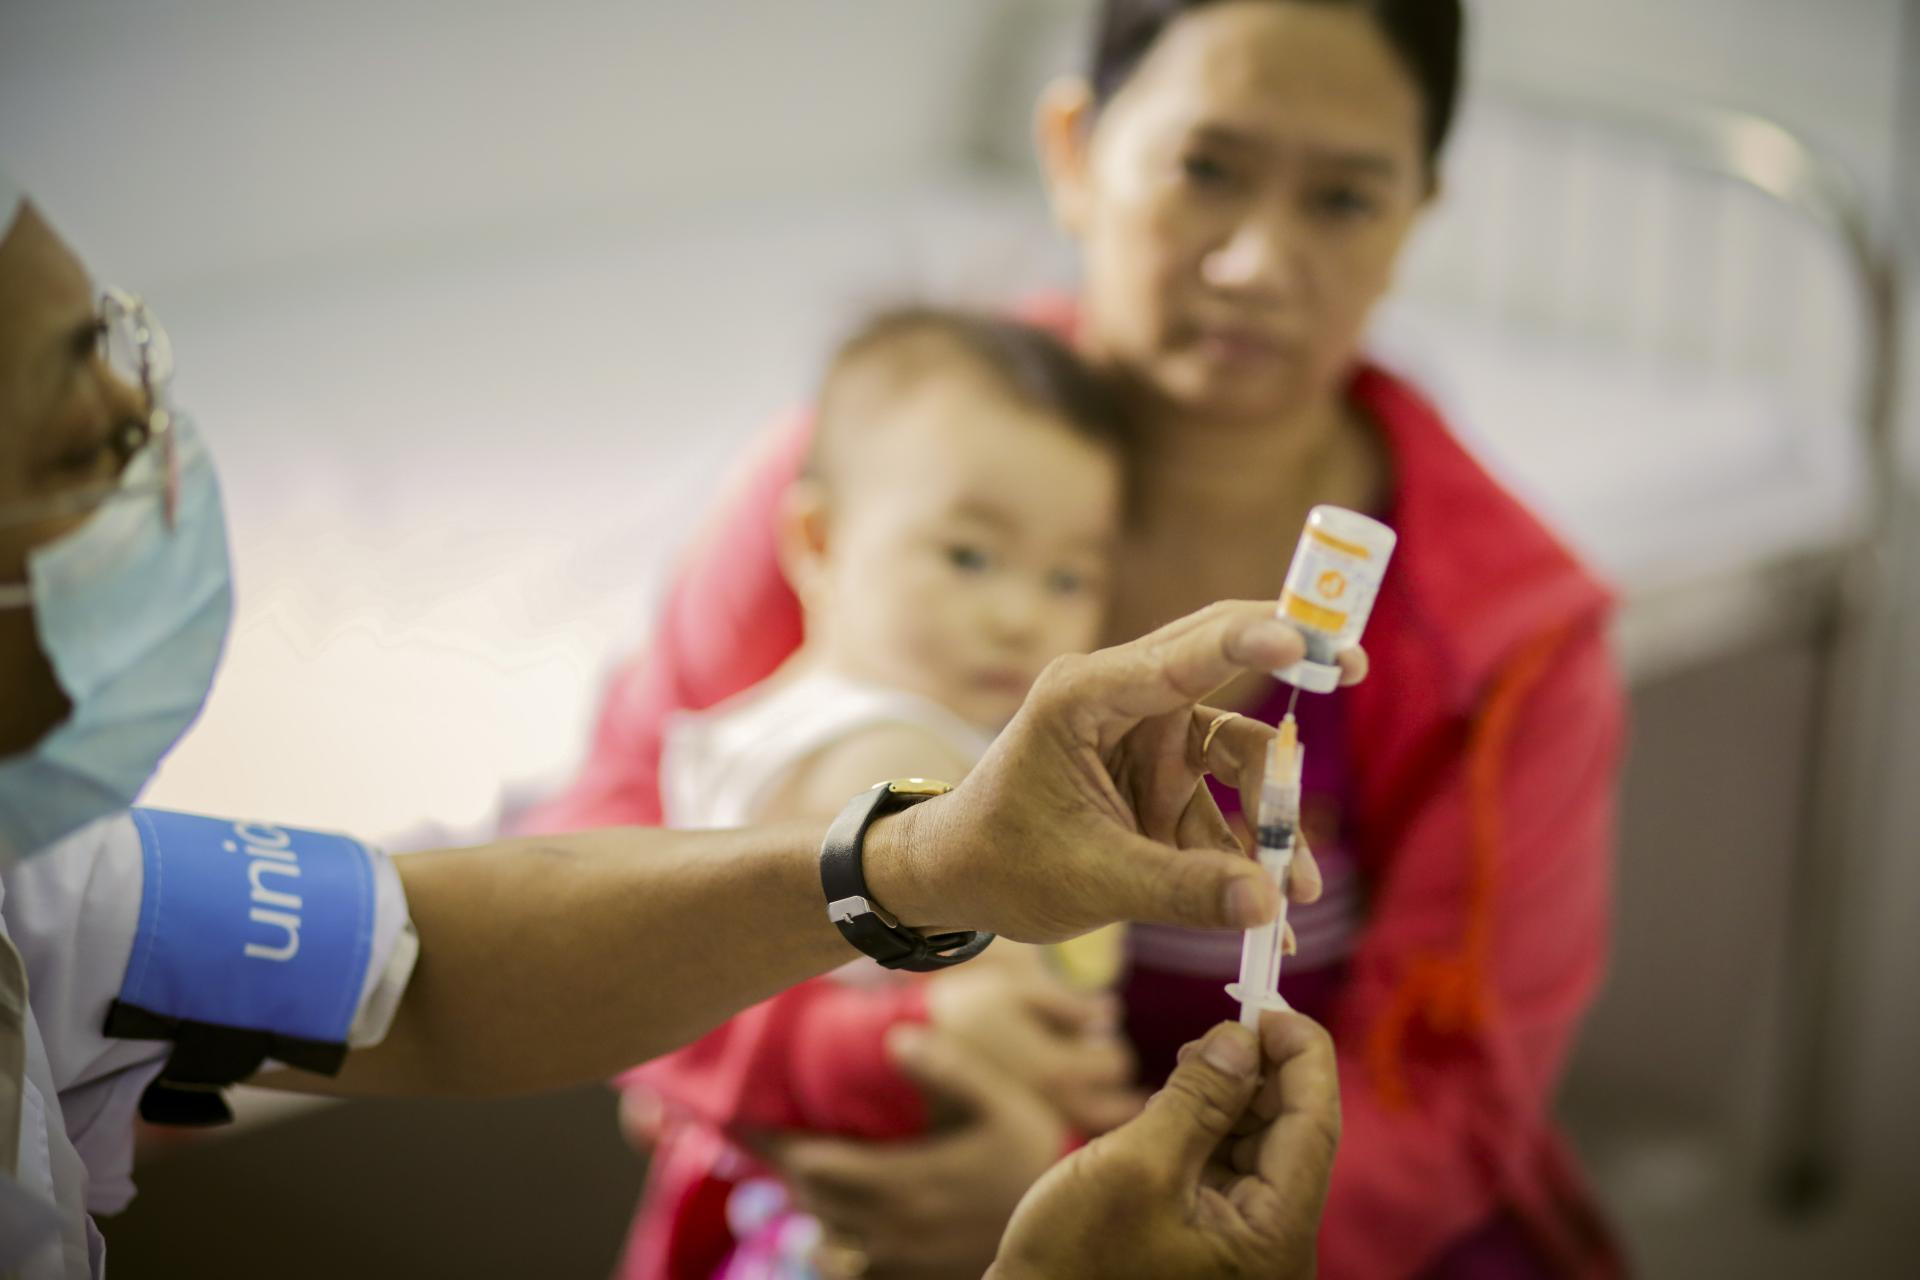 Tỷ lệ trẻ em Việt Nam không tiêm vắc xin ở thành phố cao hơn 1,5 lần nông thôn